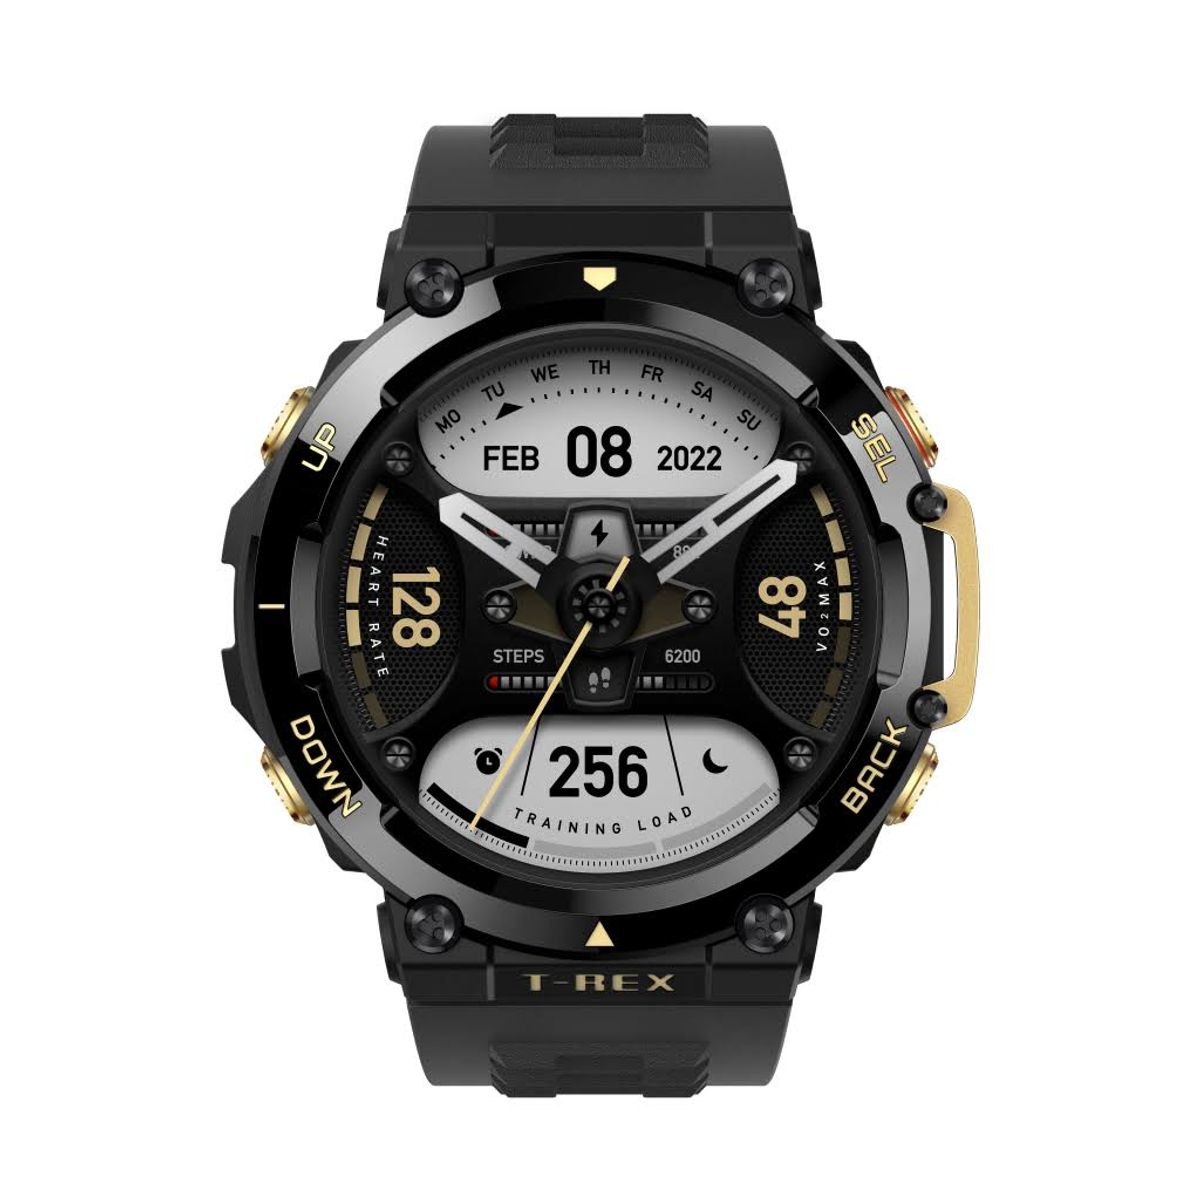 T-Rex Smartwatch AMAZFIT 2 Kunststoff schwarz 140-205 mm, Polymer,